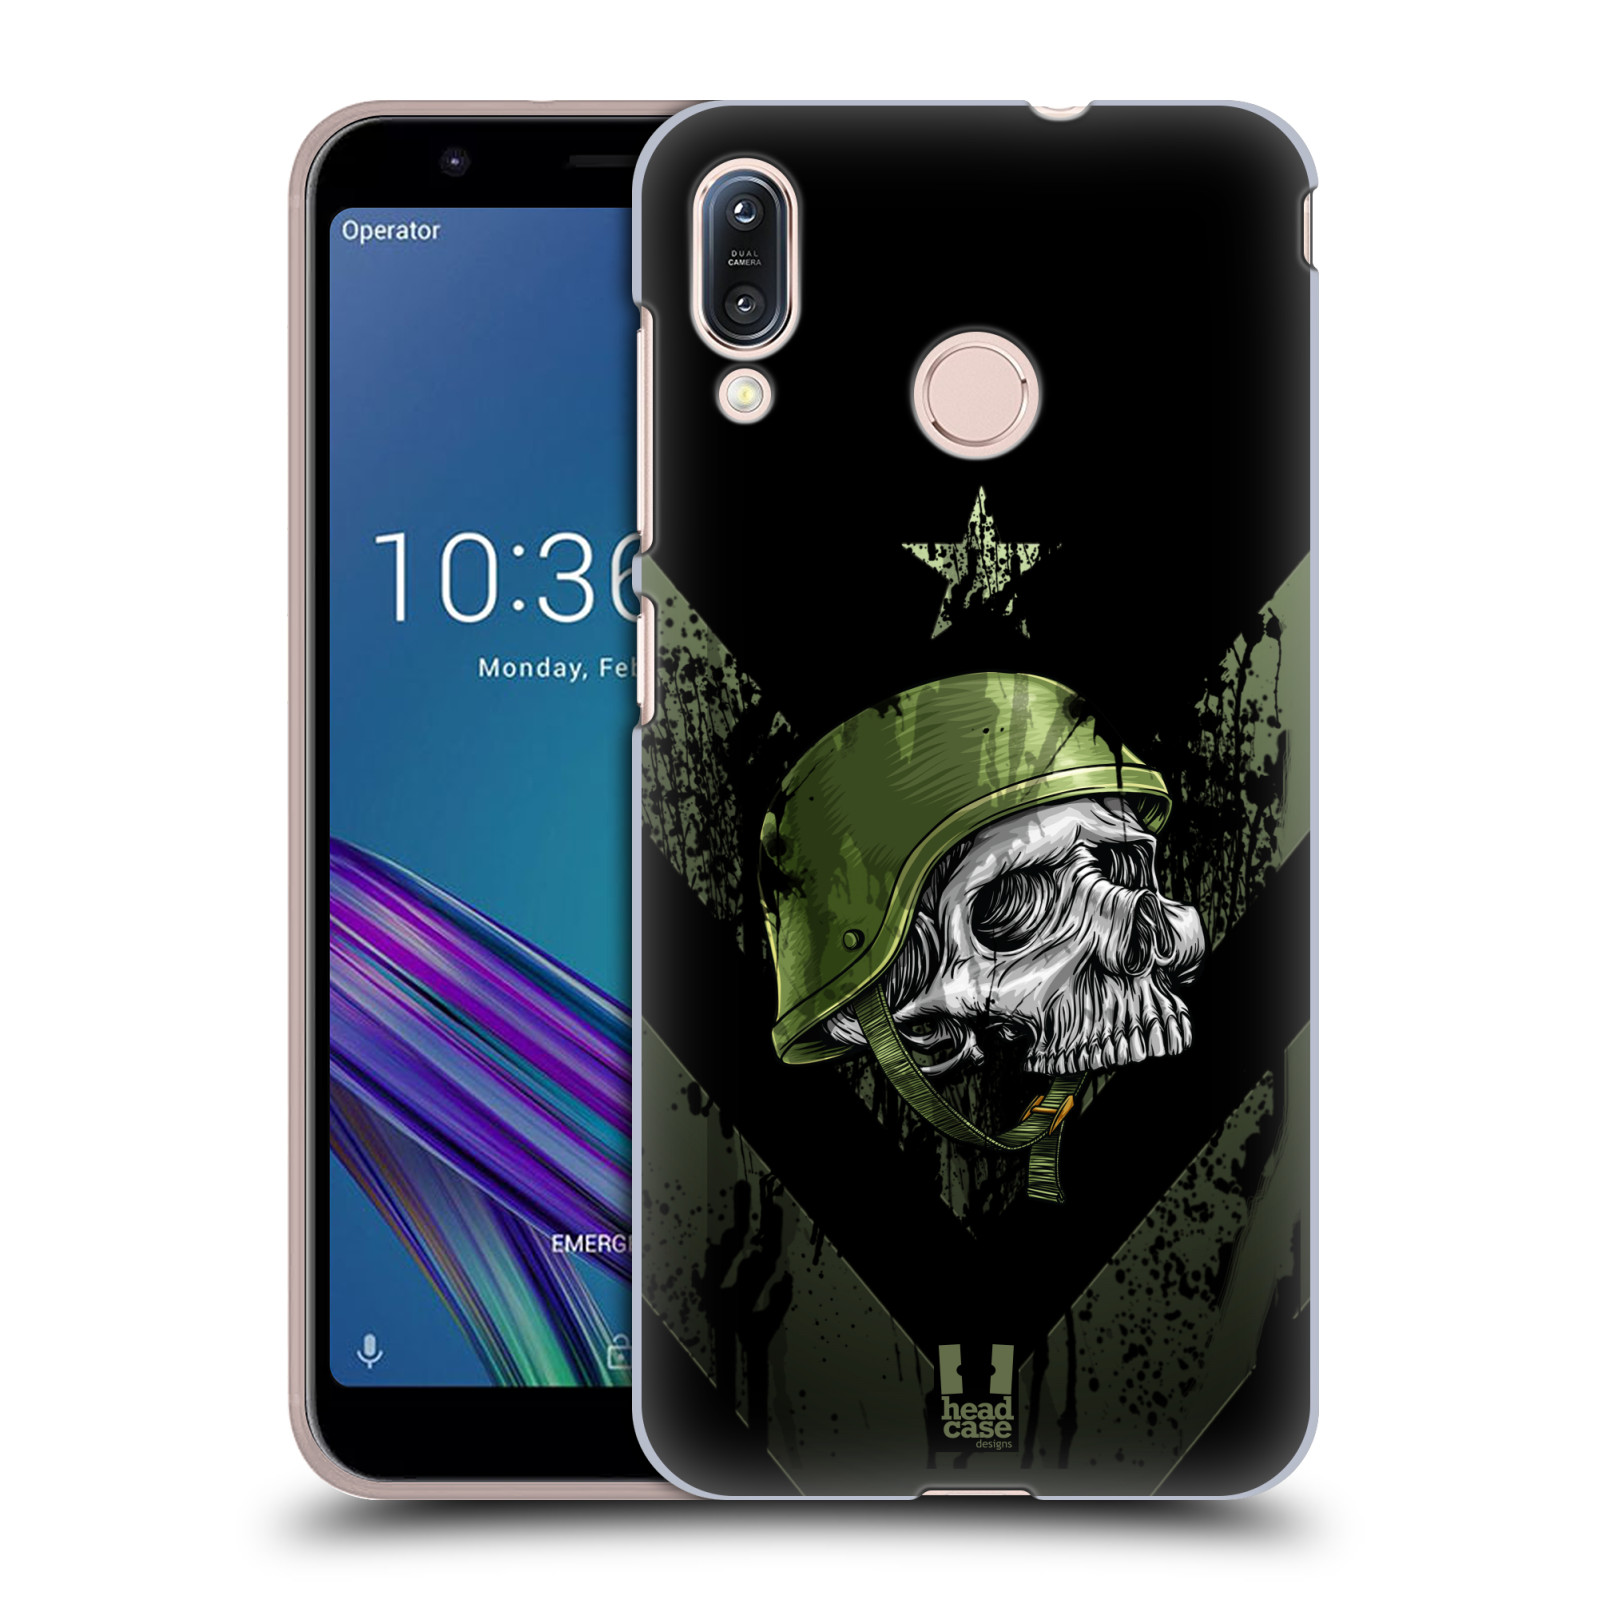 Pouzdro na mobil Asus Zenfone Max M1 (ZB555KL) - HEAD CASE - vzor Kovový vzhled armáda jednoho muže